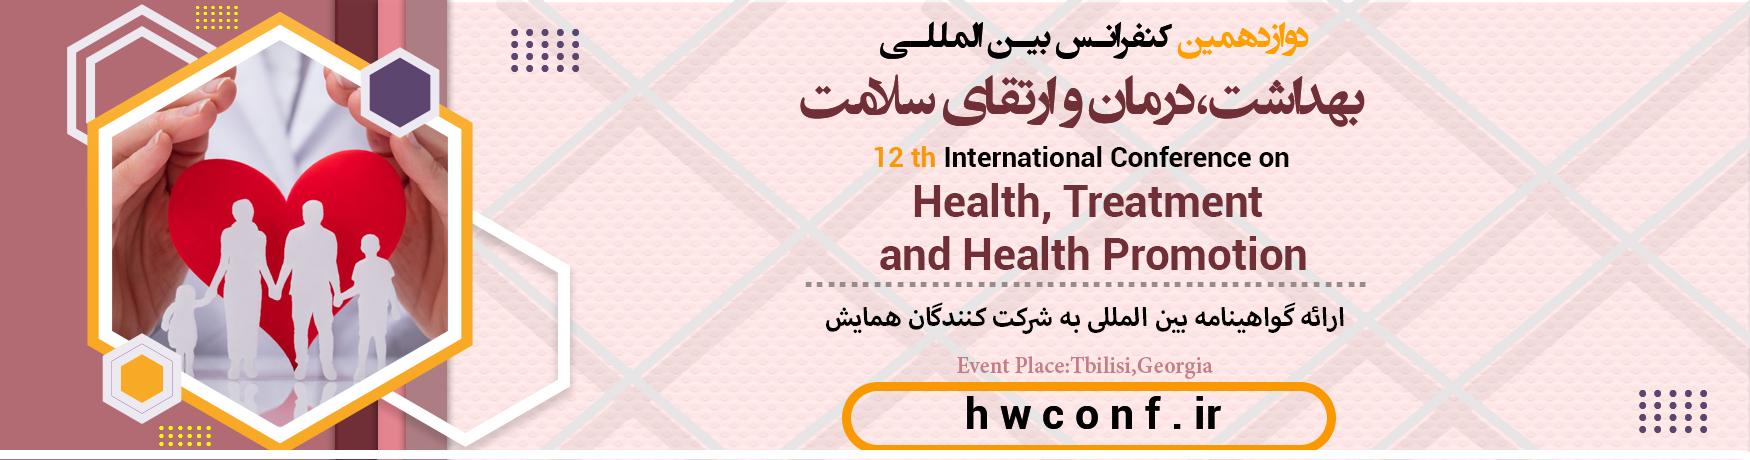 کنفرانس بین المللی بهداشت،درمان و ارتقای سلامت	